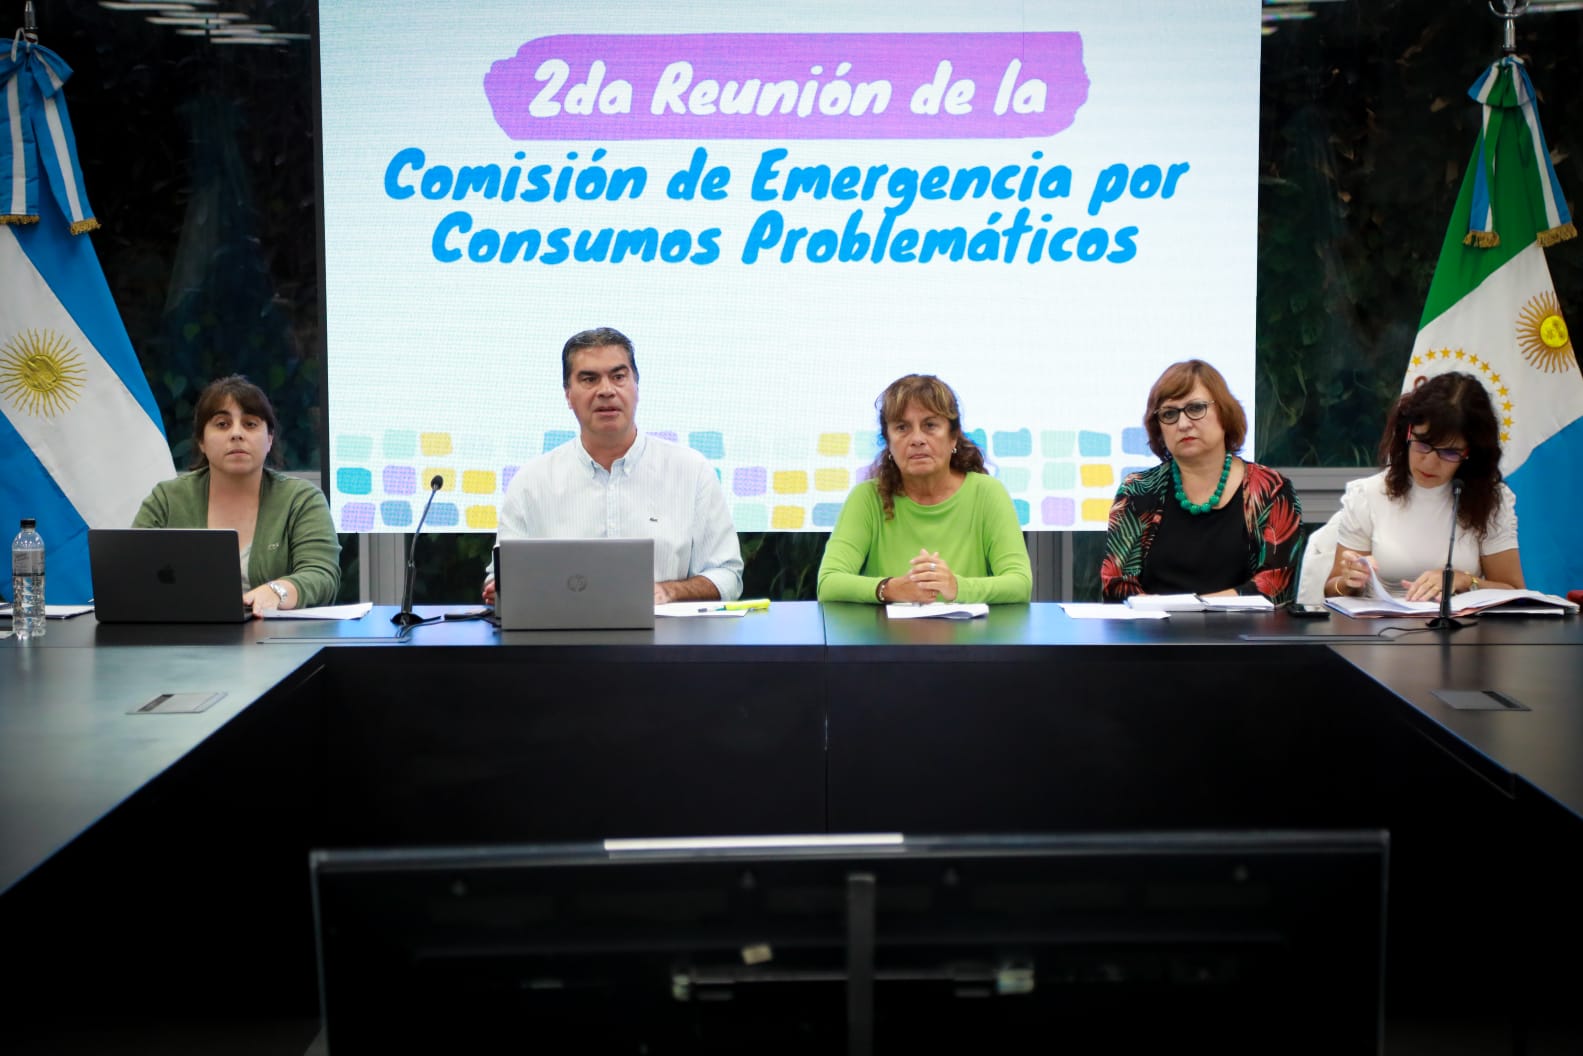 Consumos problemáticos: la comisión de emergencia avanza con una agenda de trabajo